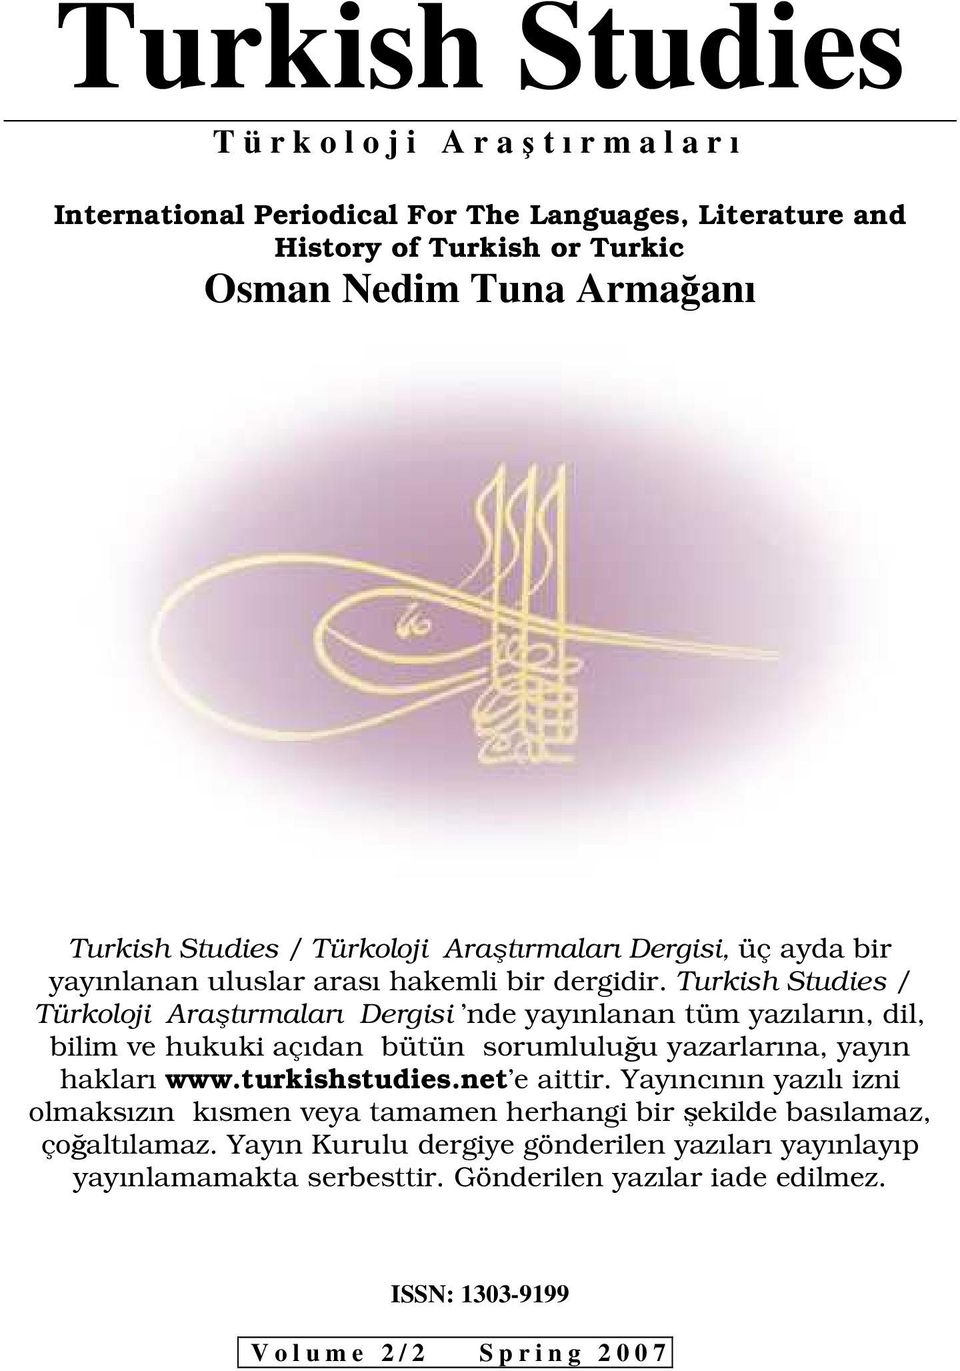 Turkish Studies / Türkoloji Araştırmaları Dergisi nde yayınlanan tüm yazıların, dil, bilim ve hukuki açıdan bütün sorumluluğu yazarlarına, yayın hakları www.turkishstudies.